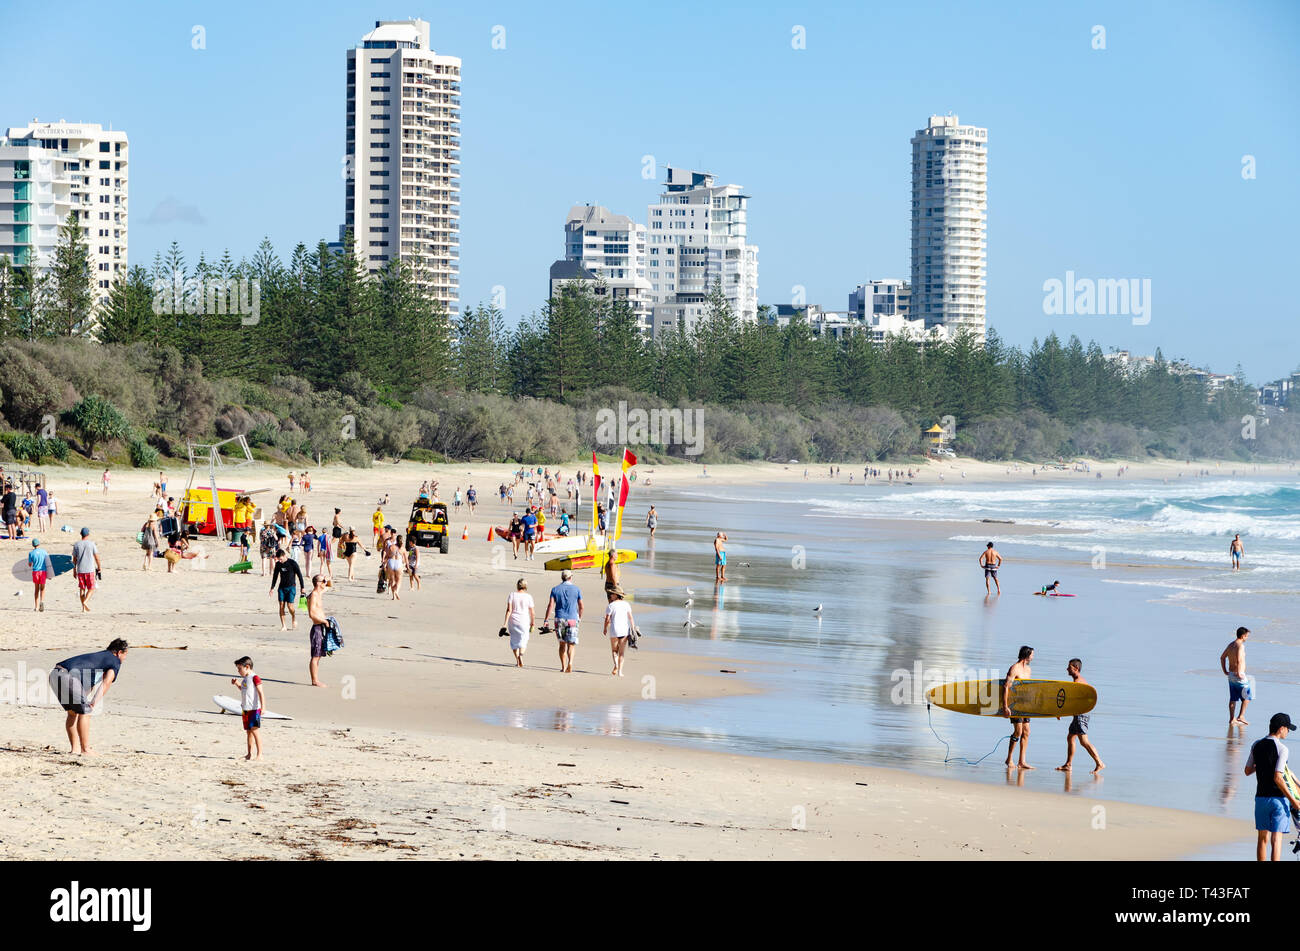 Les gens sur la plage, la baignade et le surf, à Burleigh Heads, Gold Coast, Queensland, Australie Banque D'Images